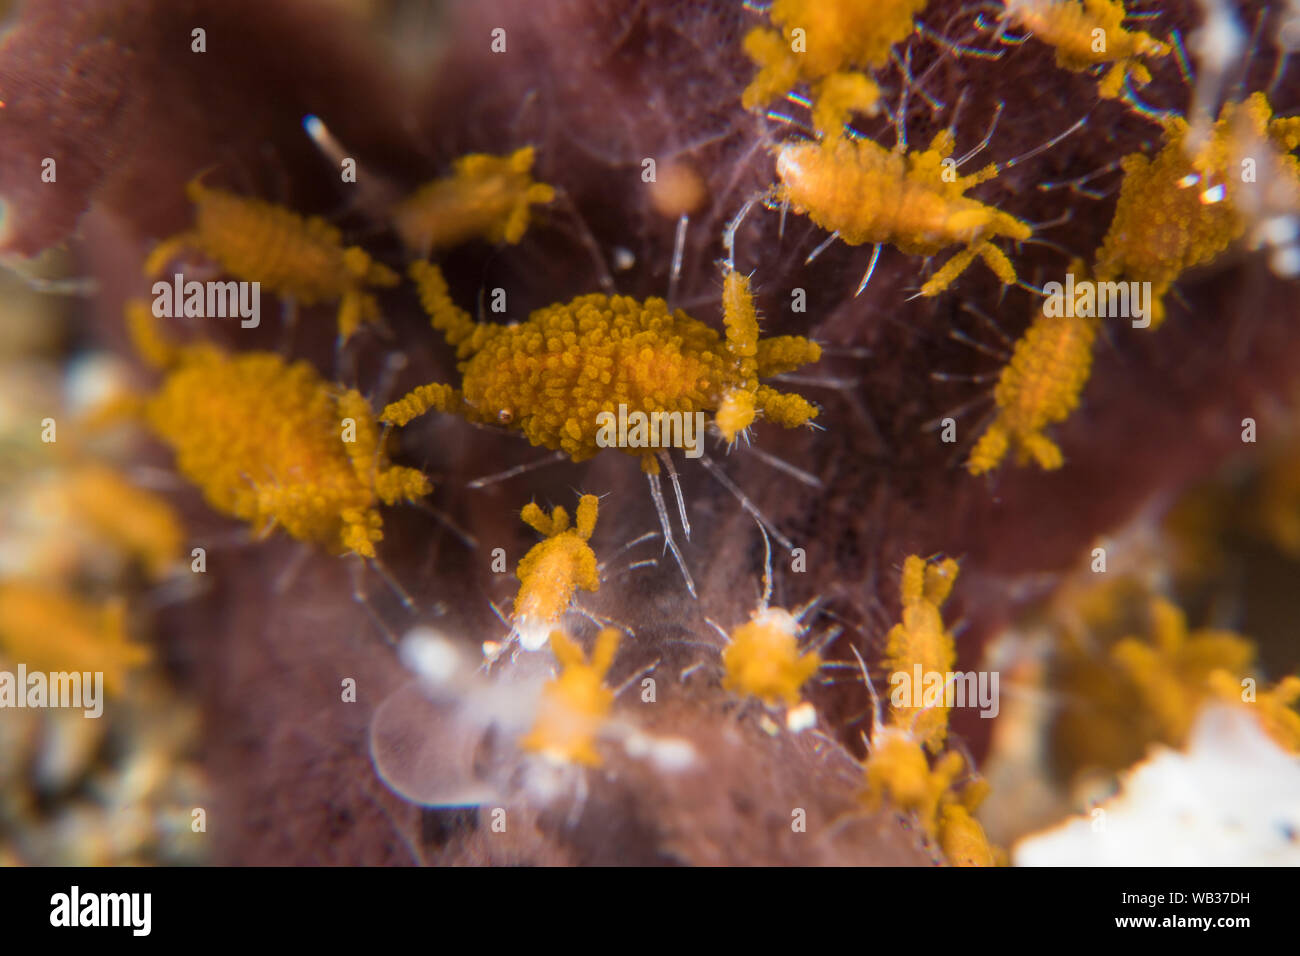 Tiny Sponge Isopods (Santia) Cling to Sponge in Super Macro, Stock Photo